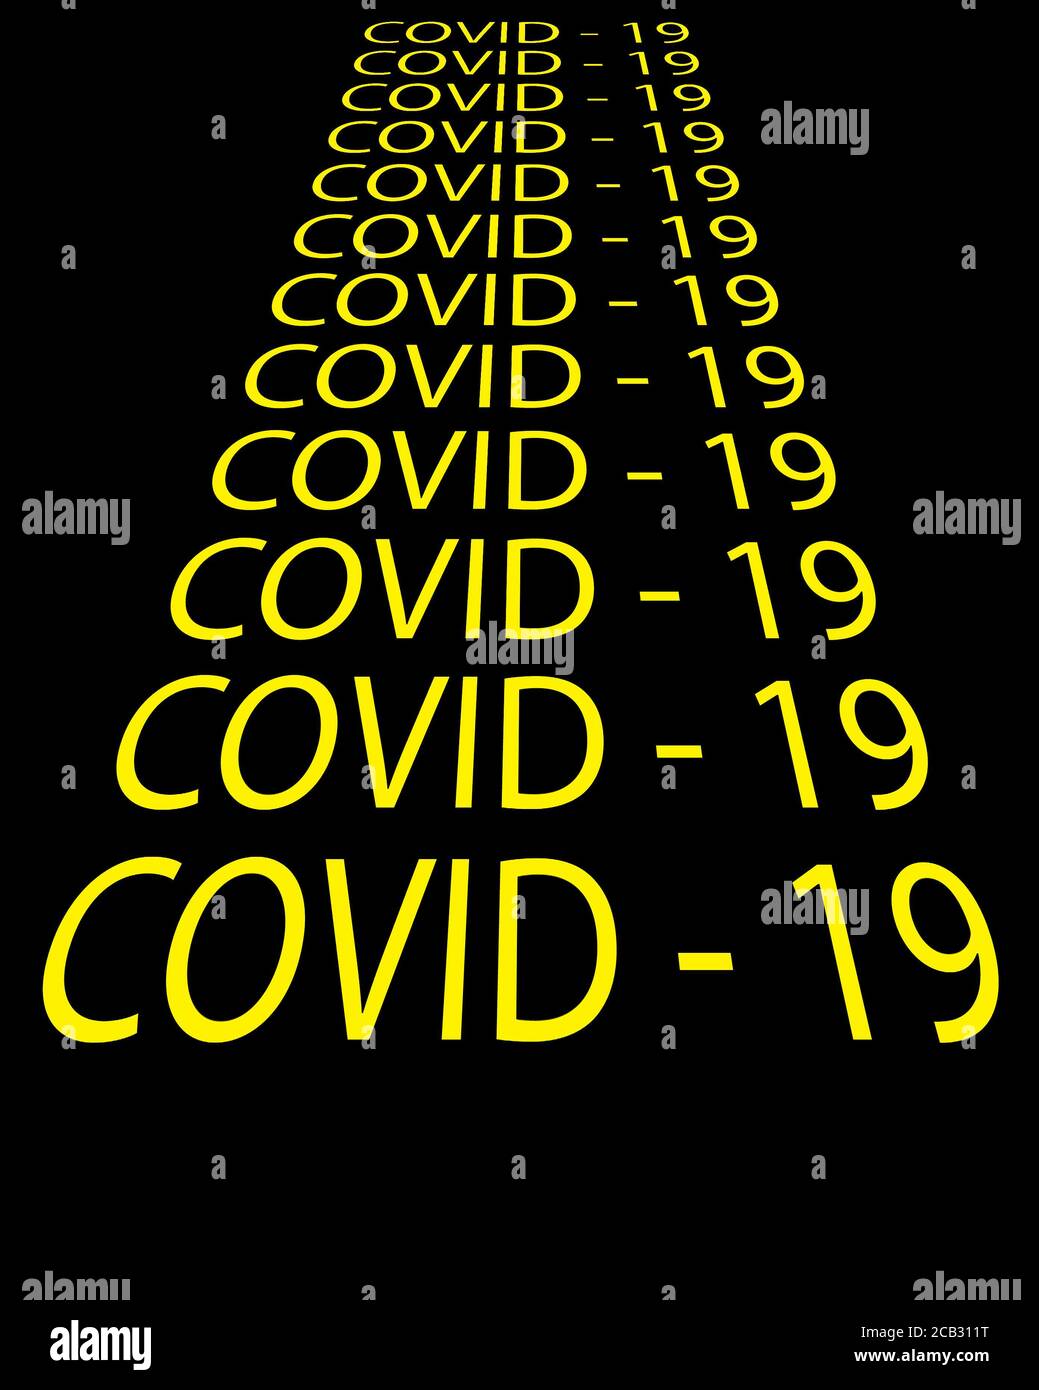 COVID-19 testo giallo su sfondo nero, in stile star wars Foto Stock